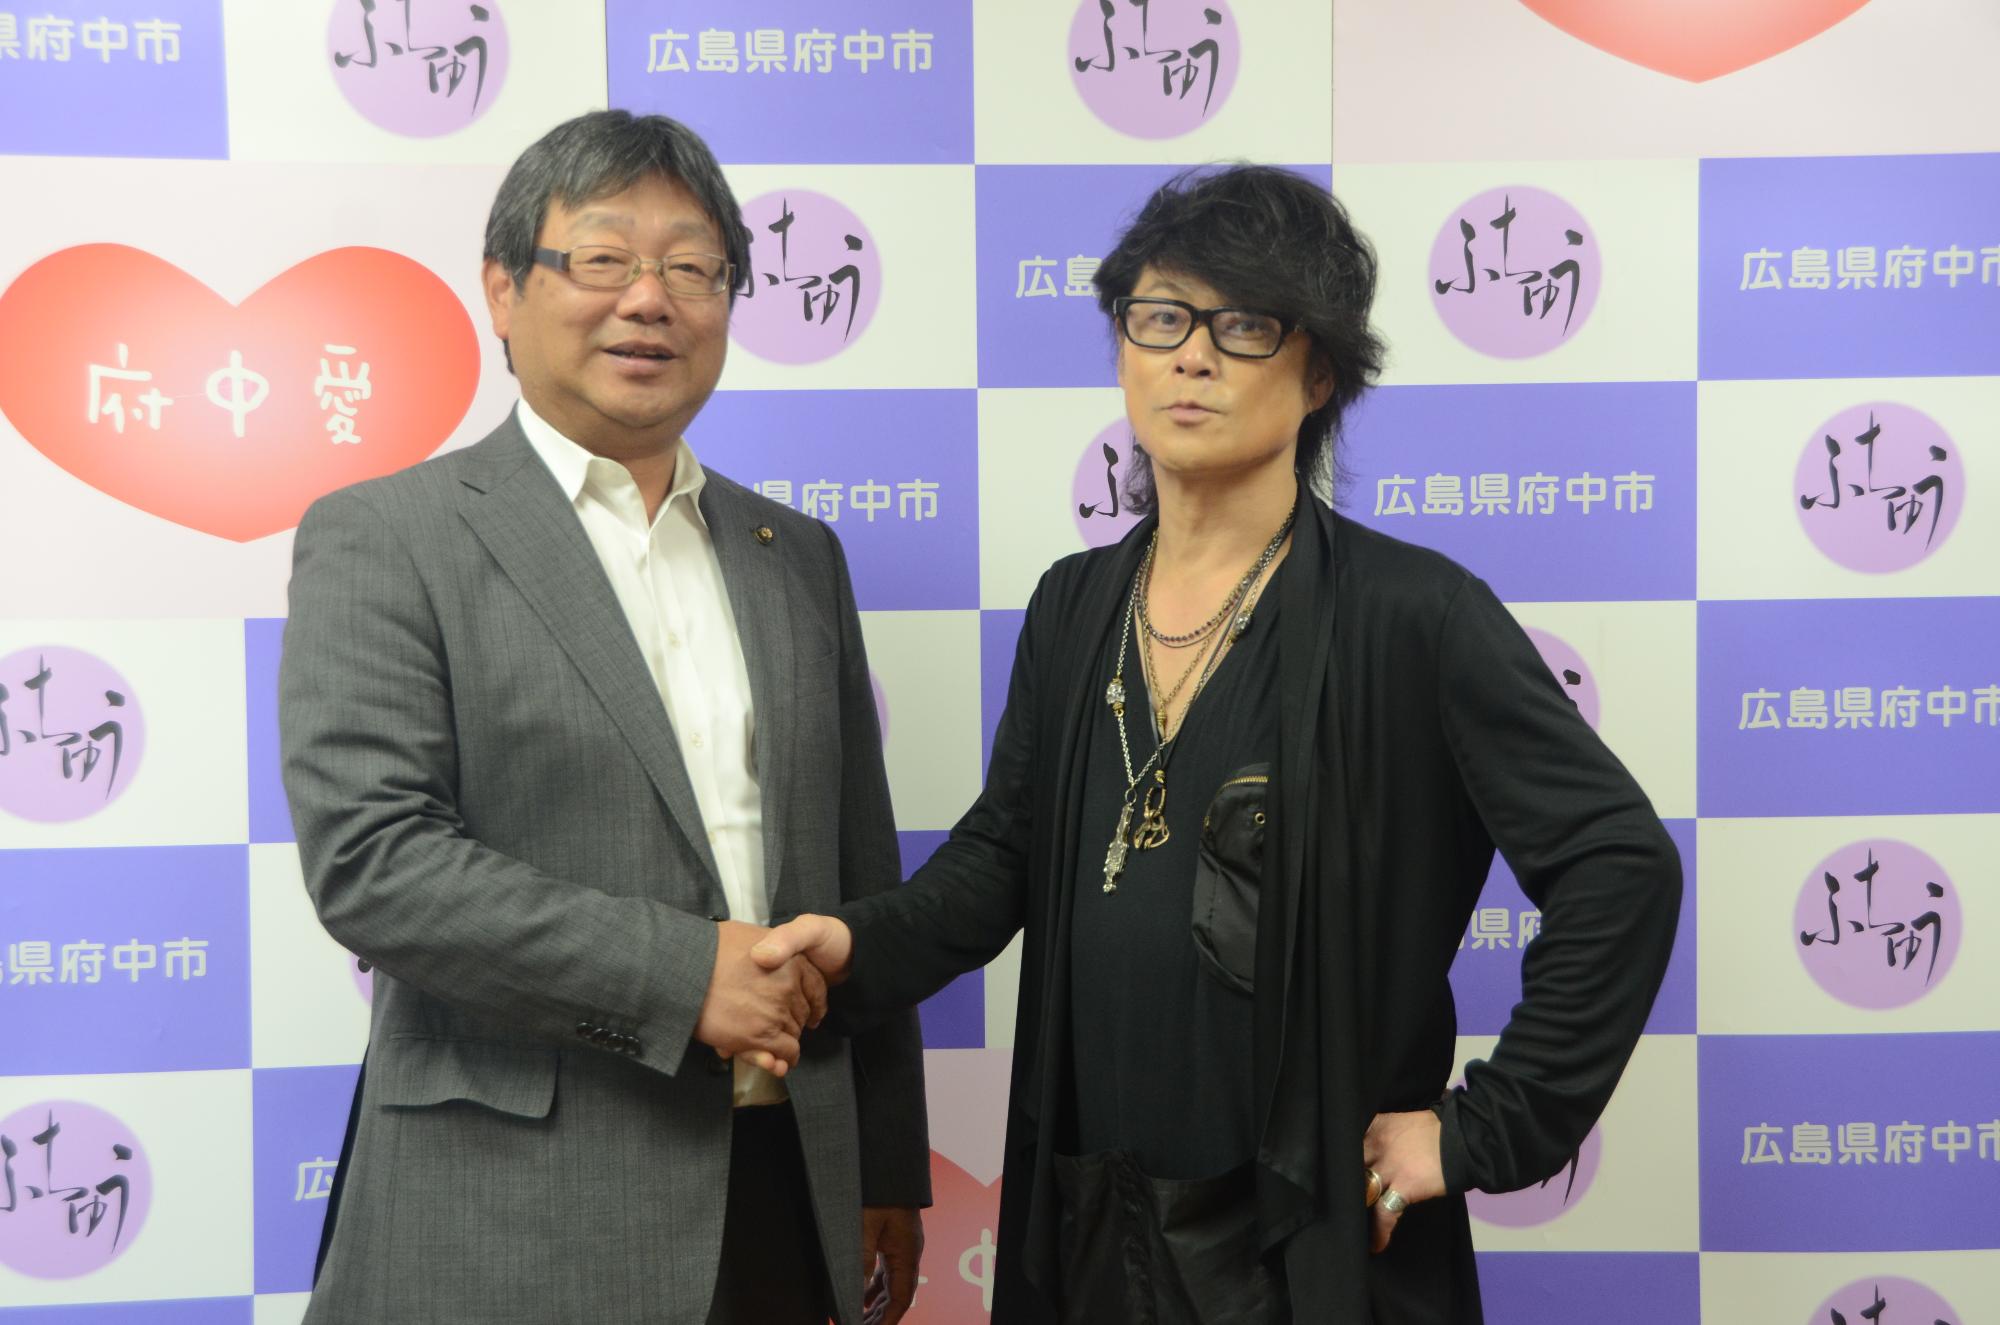 向かって左側の小野市長と向かって右側の森友嵐士さんが握手をしている写真です。